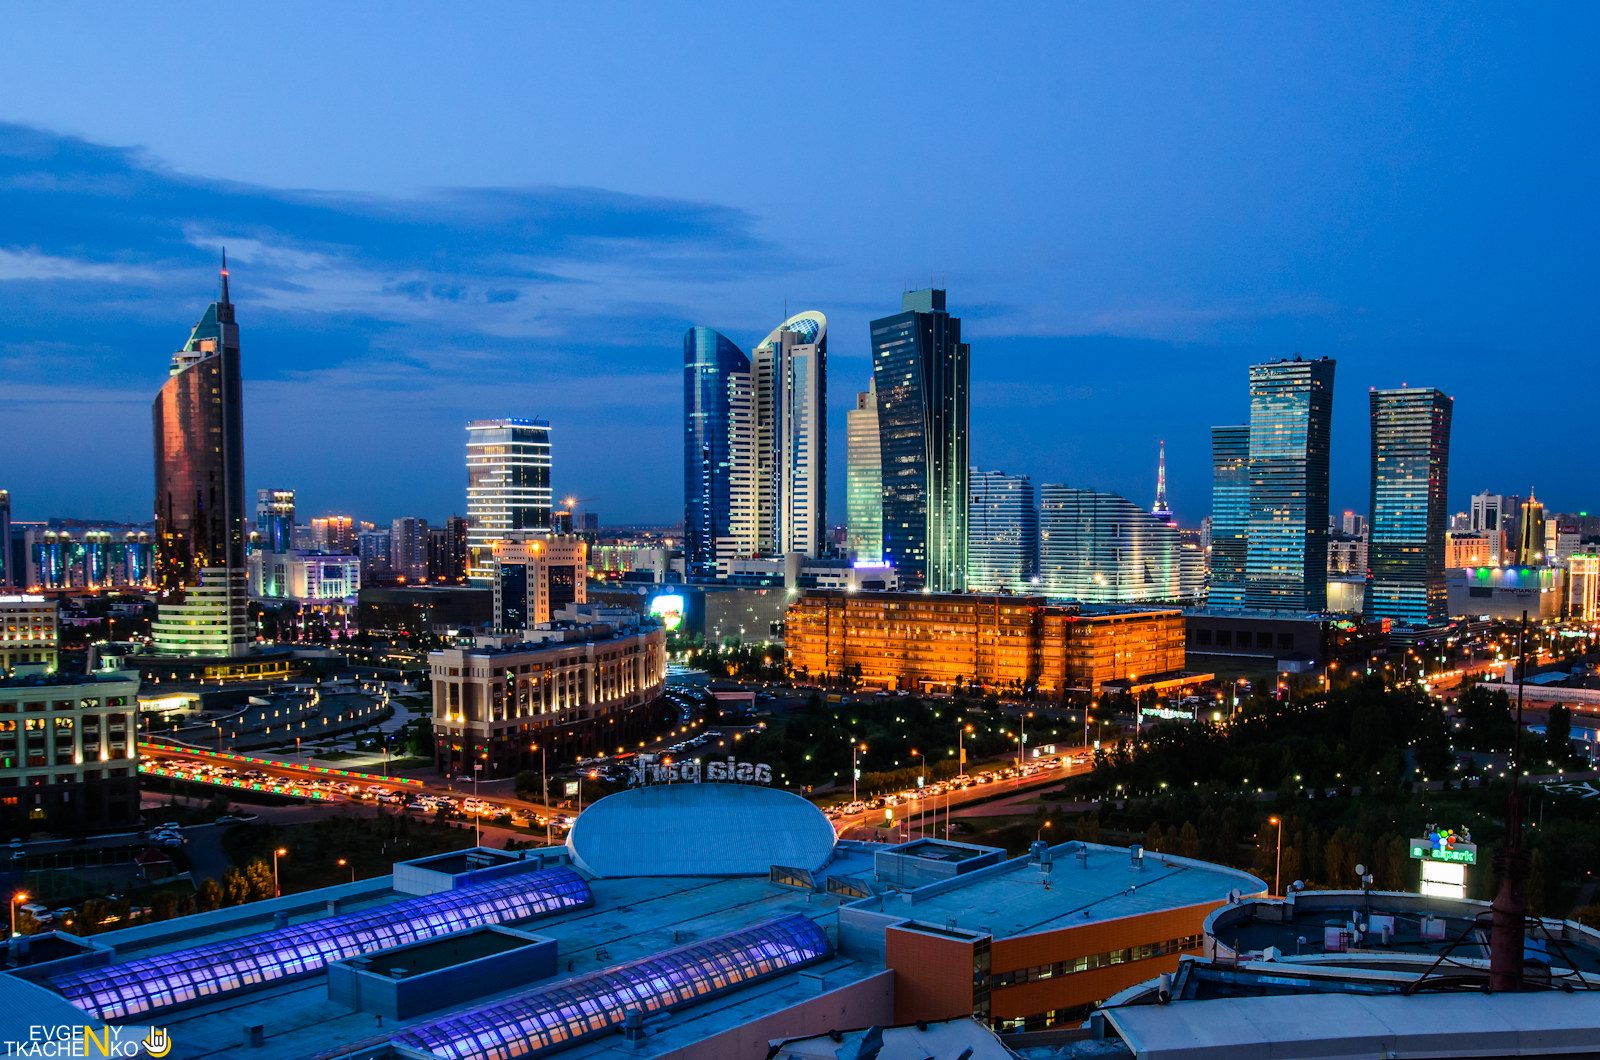 Astana: The Illuminati Capital of Kazakhstan